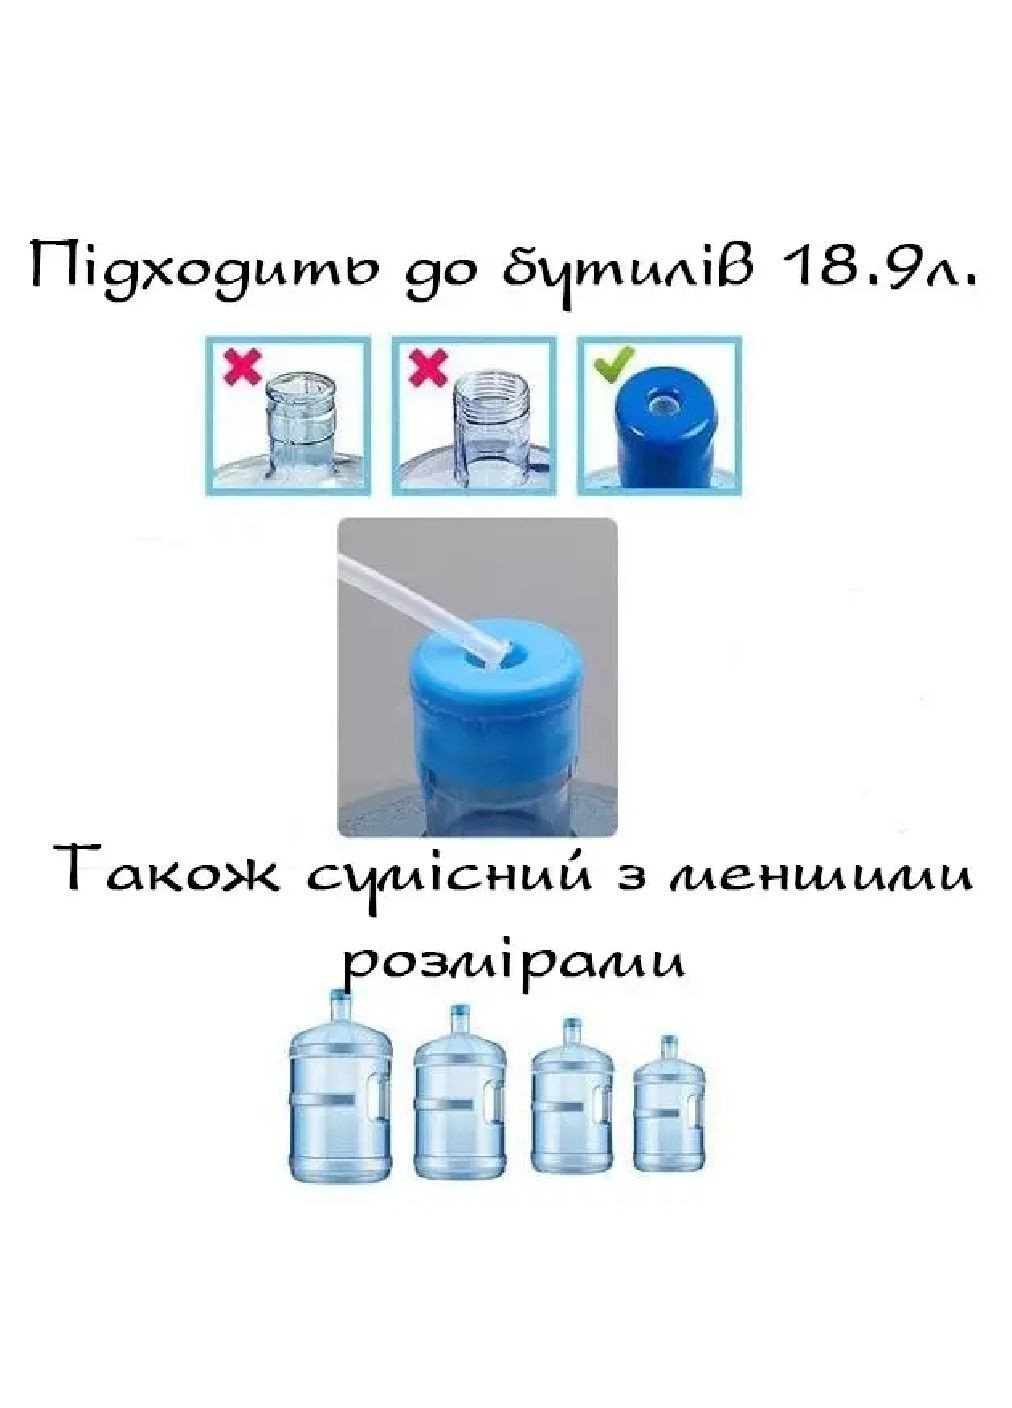 Електрична акумуляторна помпа насос для всіх типів бутильованої води тиха робота пластик 5 В (476436-Prob) Біла Unbranded (282595854)